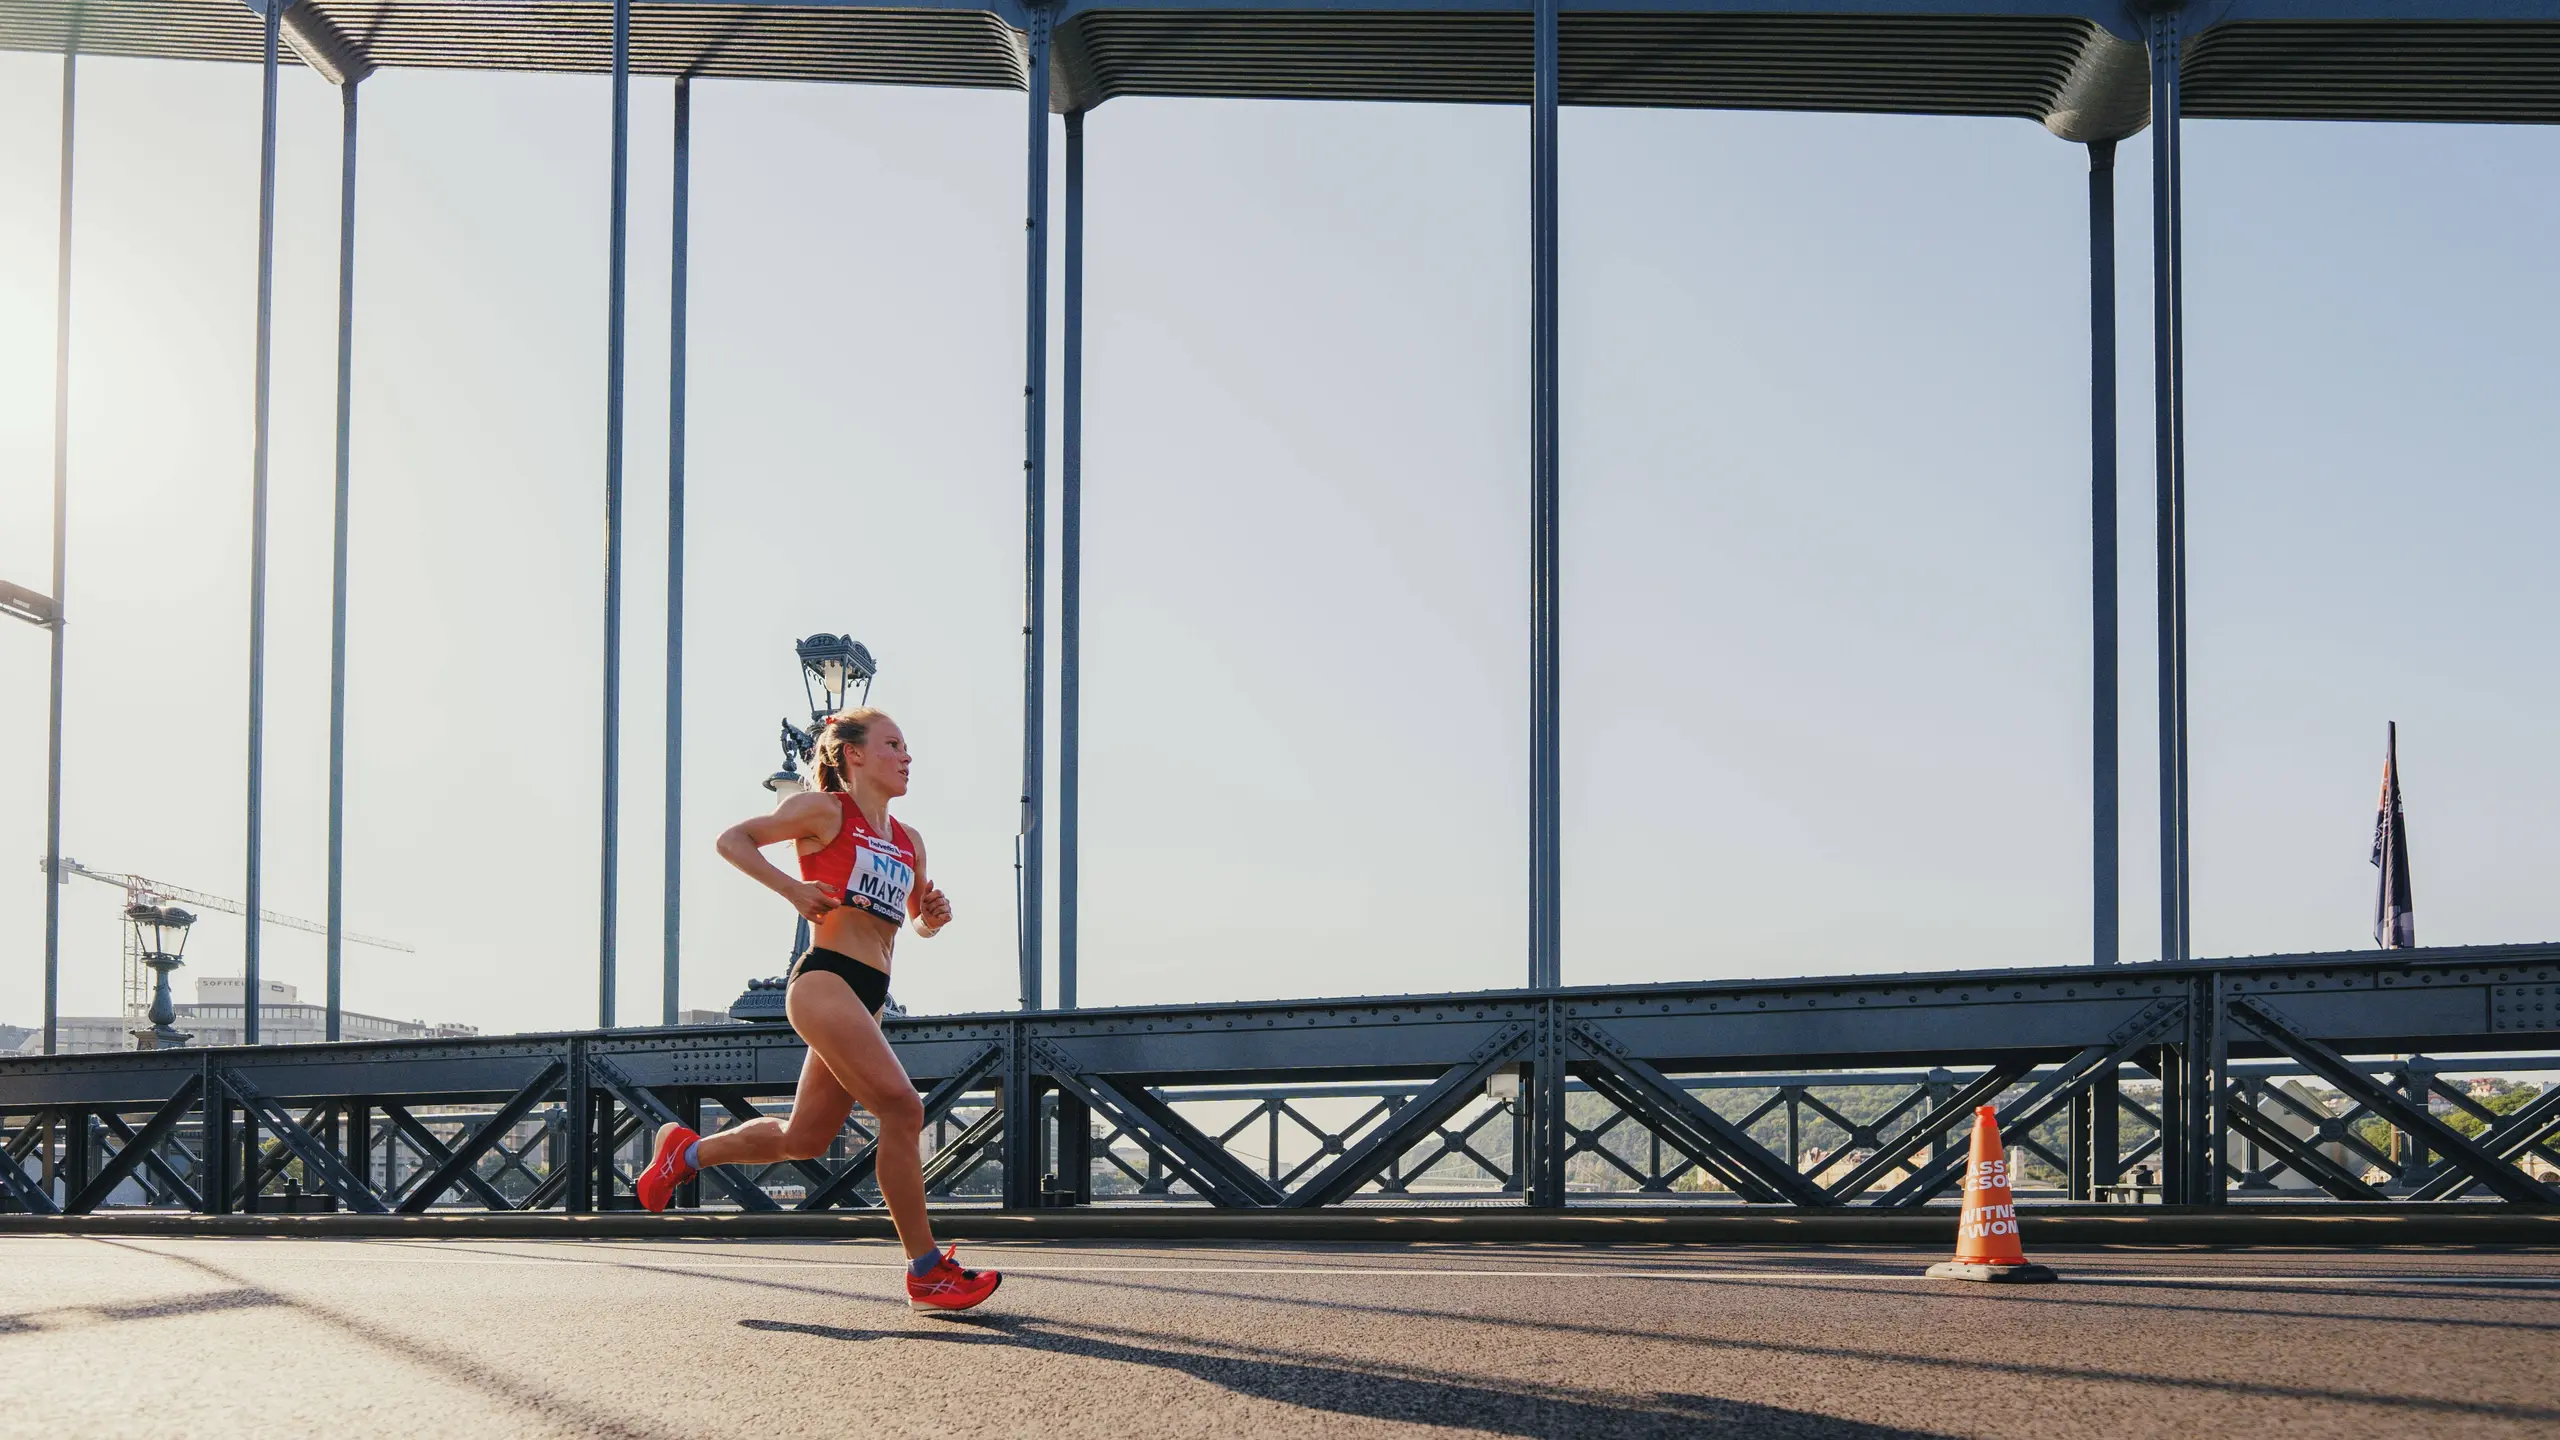 Marathonläuferin Julia Mayer thematisiert Periode im Leistungssport und bekommt Kritik